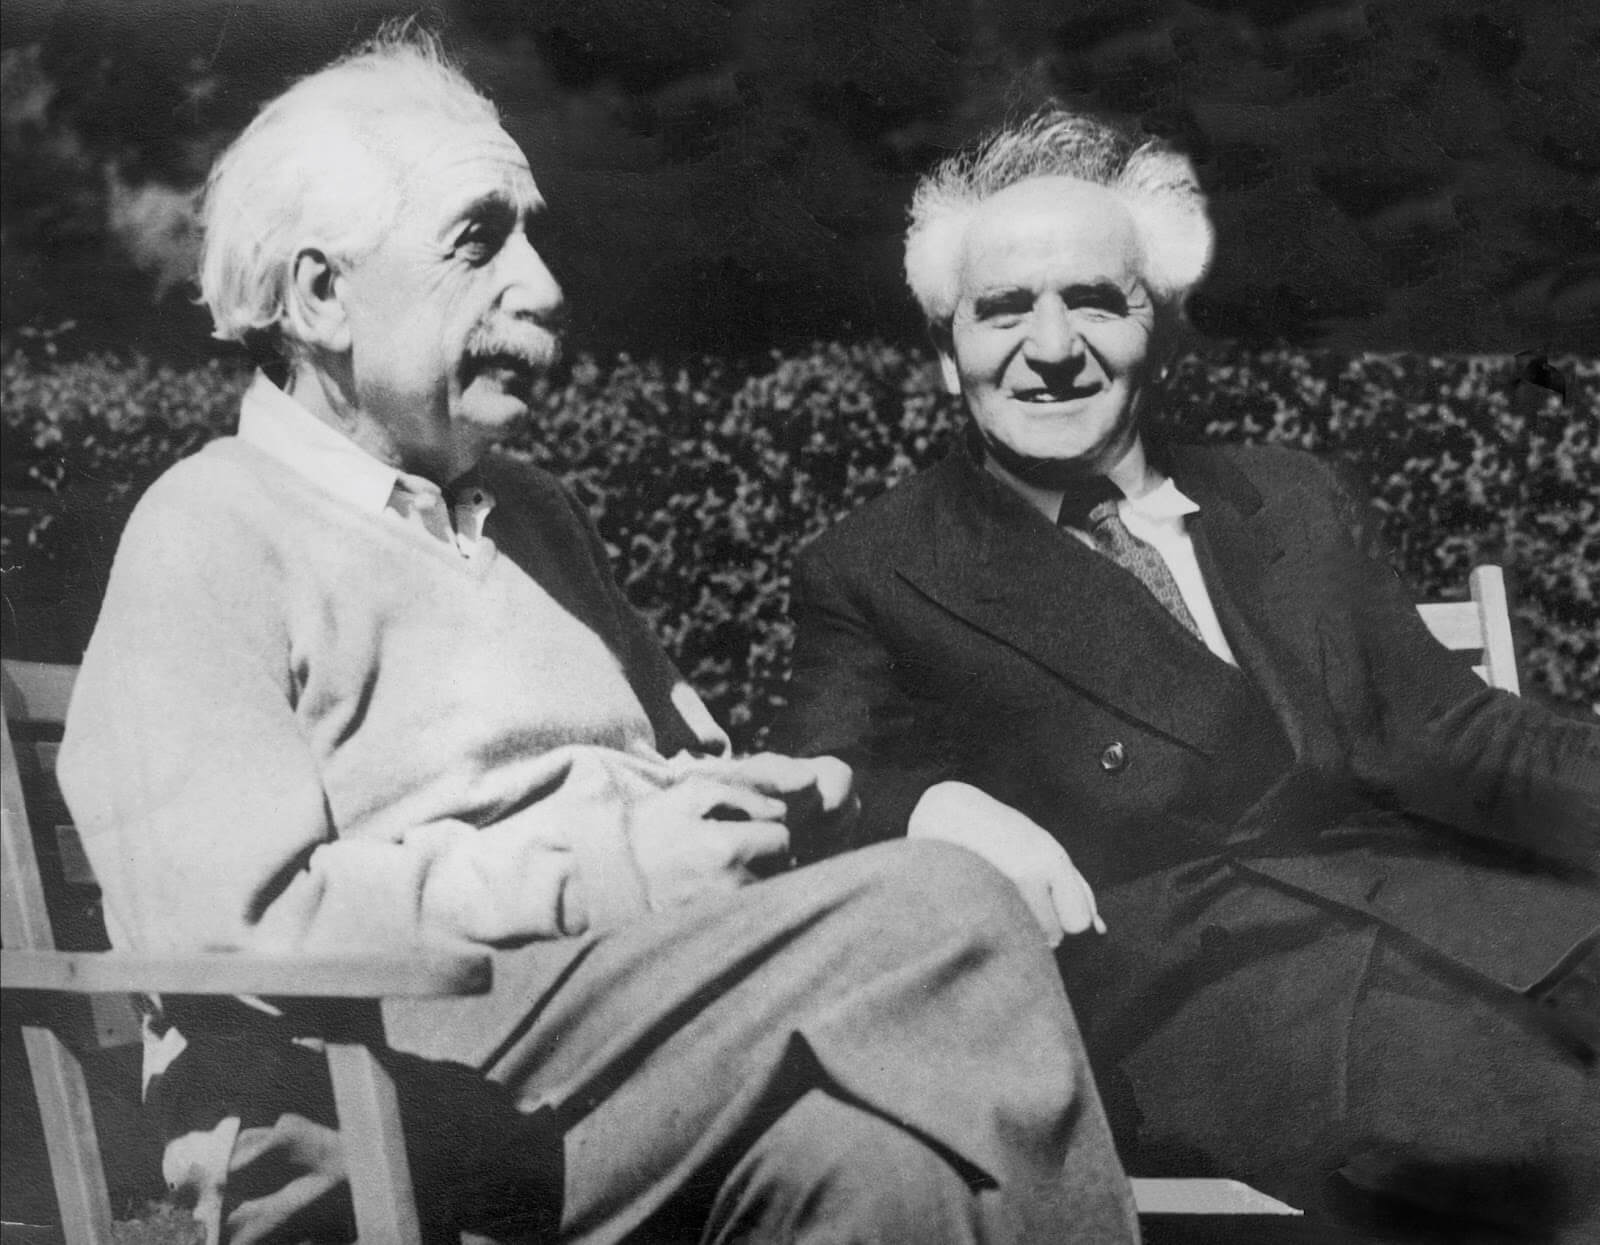 דוד בן גוריון, ופרופ' אלברט איינשטיין בשנת 1948. צילום: לע"מ. לאחר מותו של חיים ויצמן הציע בן גוריון לאיינשטיין להיות הנשיא השני אך זה סירב.